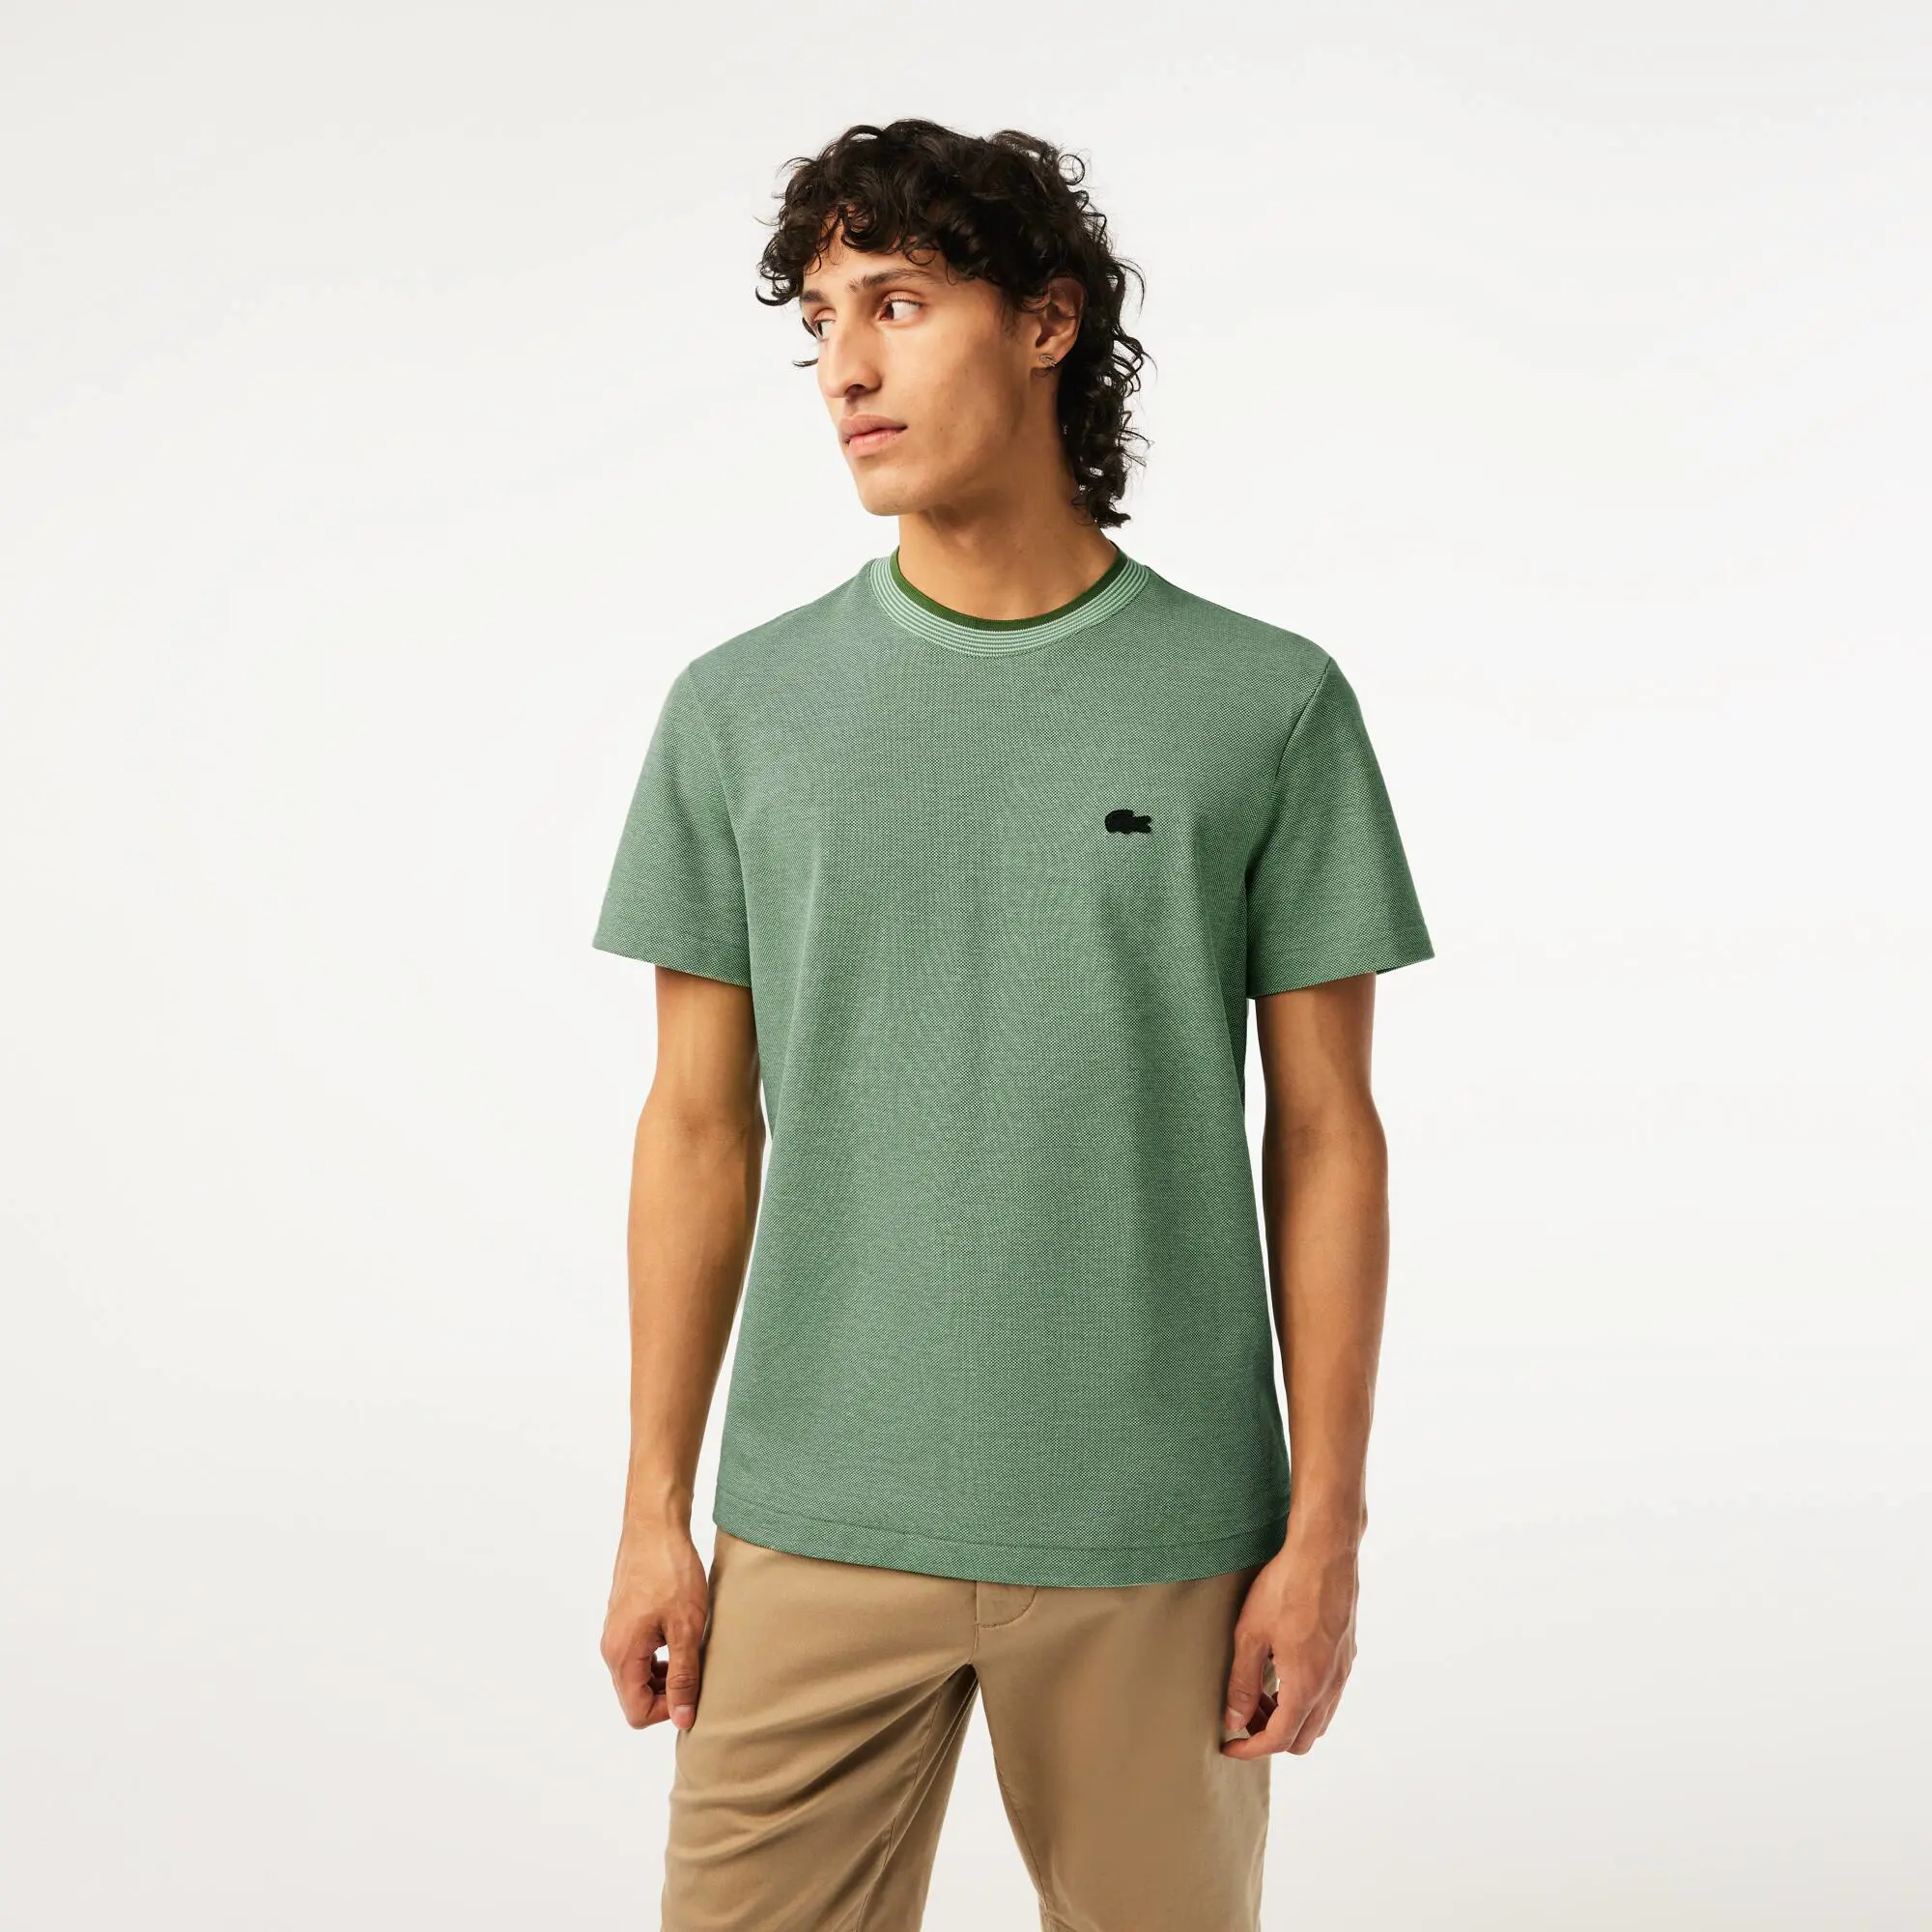 Lacoste Men’s Crew Neck Premium Cotton T-shirt. 1